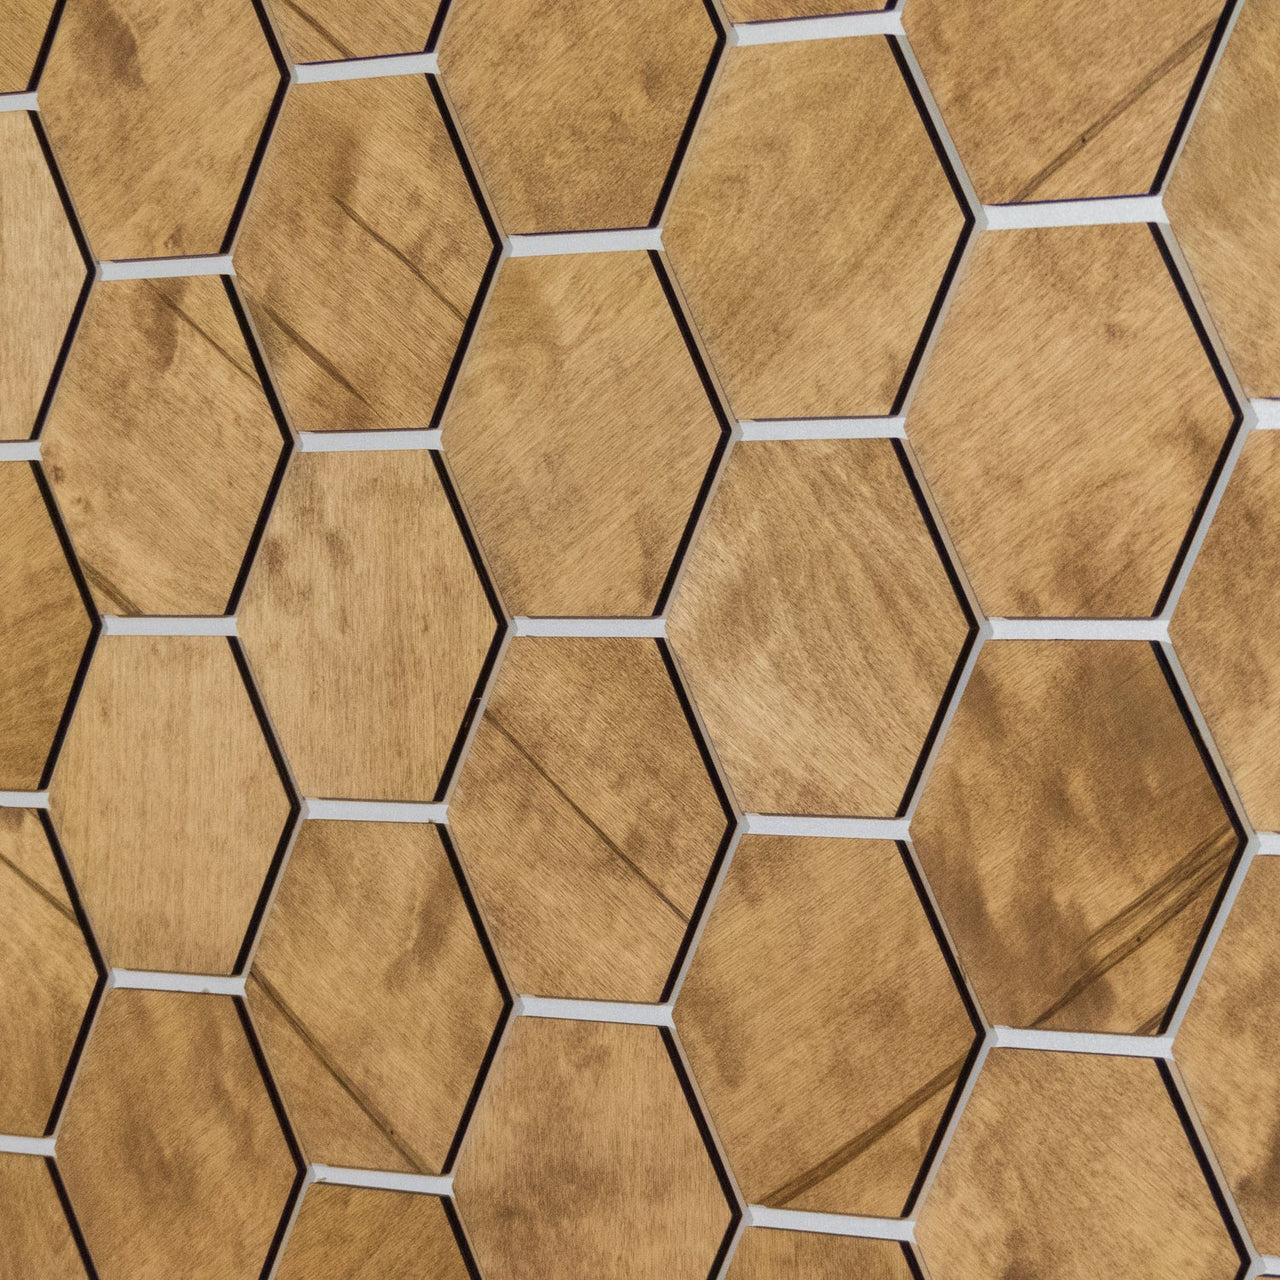 Medium Hexagon Wooden Wall Panels by Hexagonica